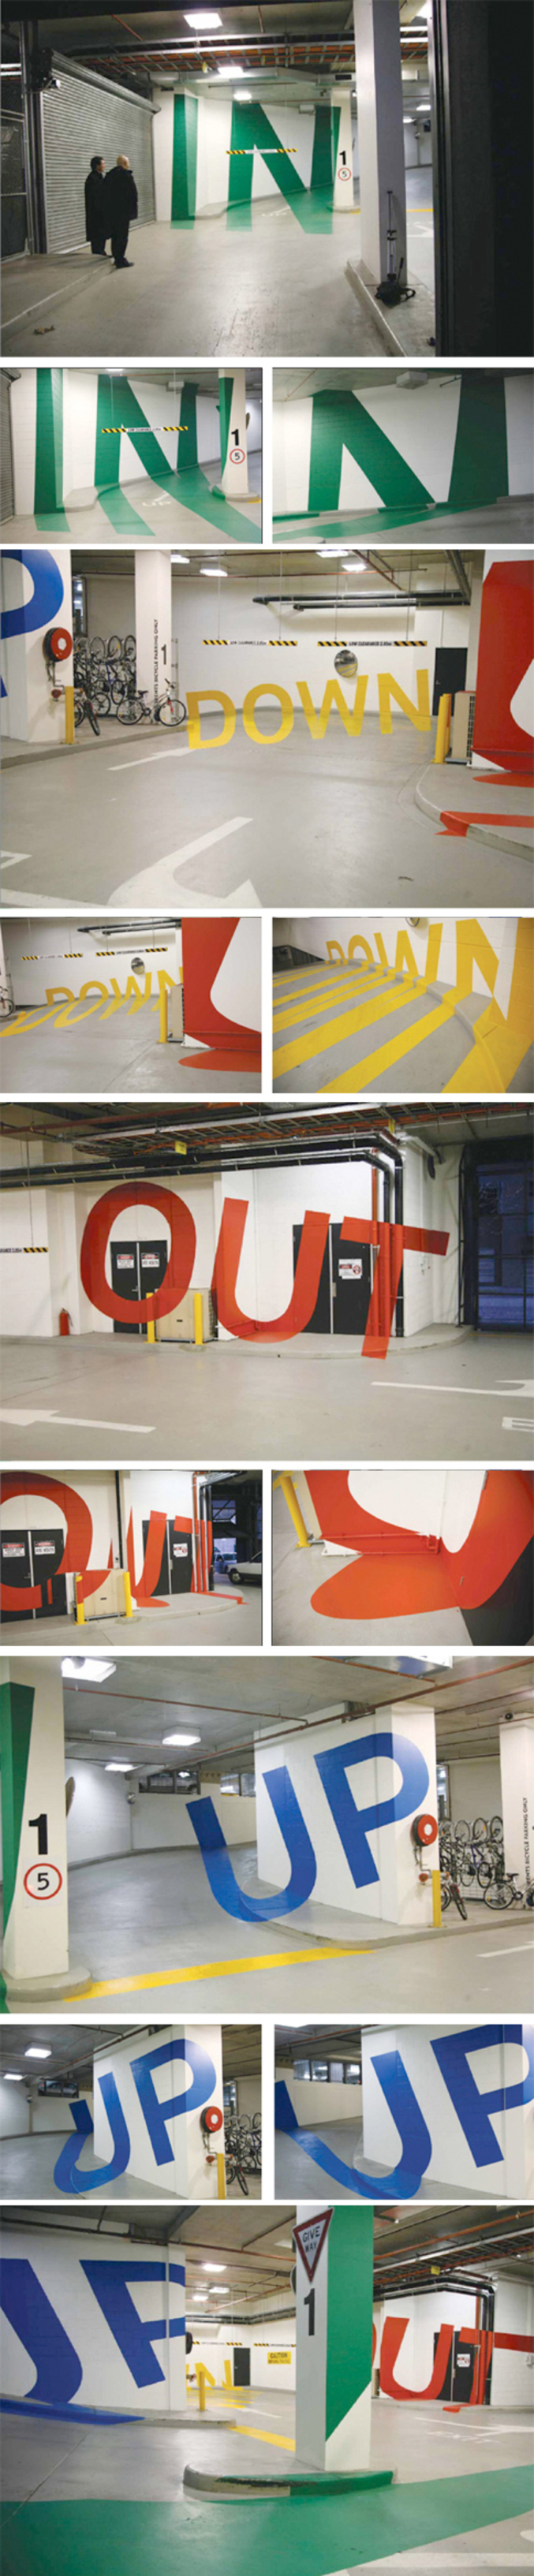 Un bel effet de peinture réalisé dans un parking sous-terrain.